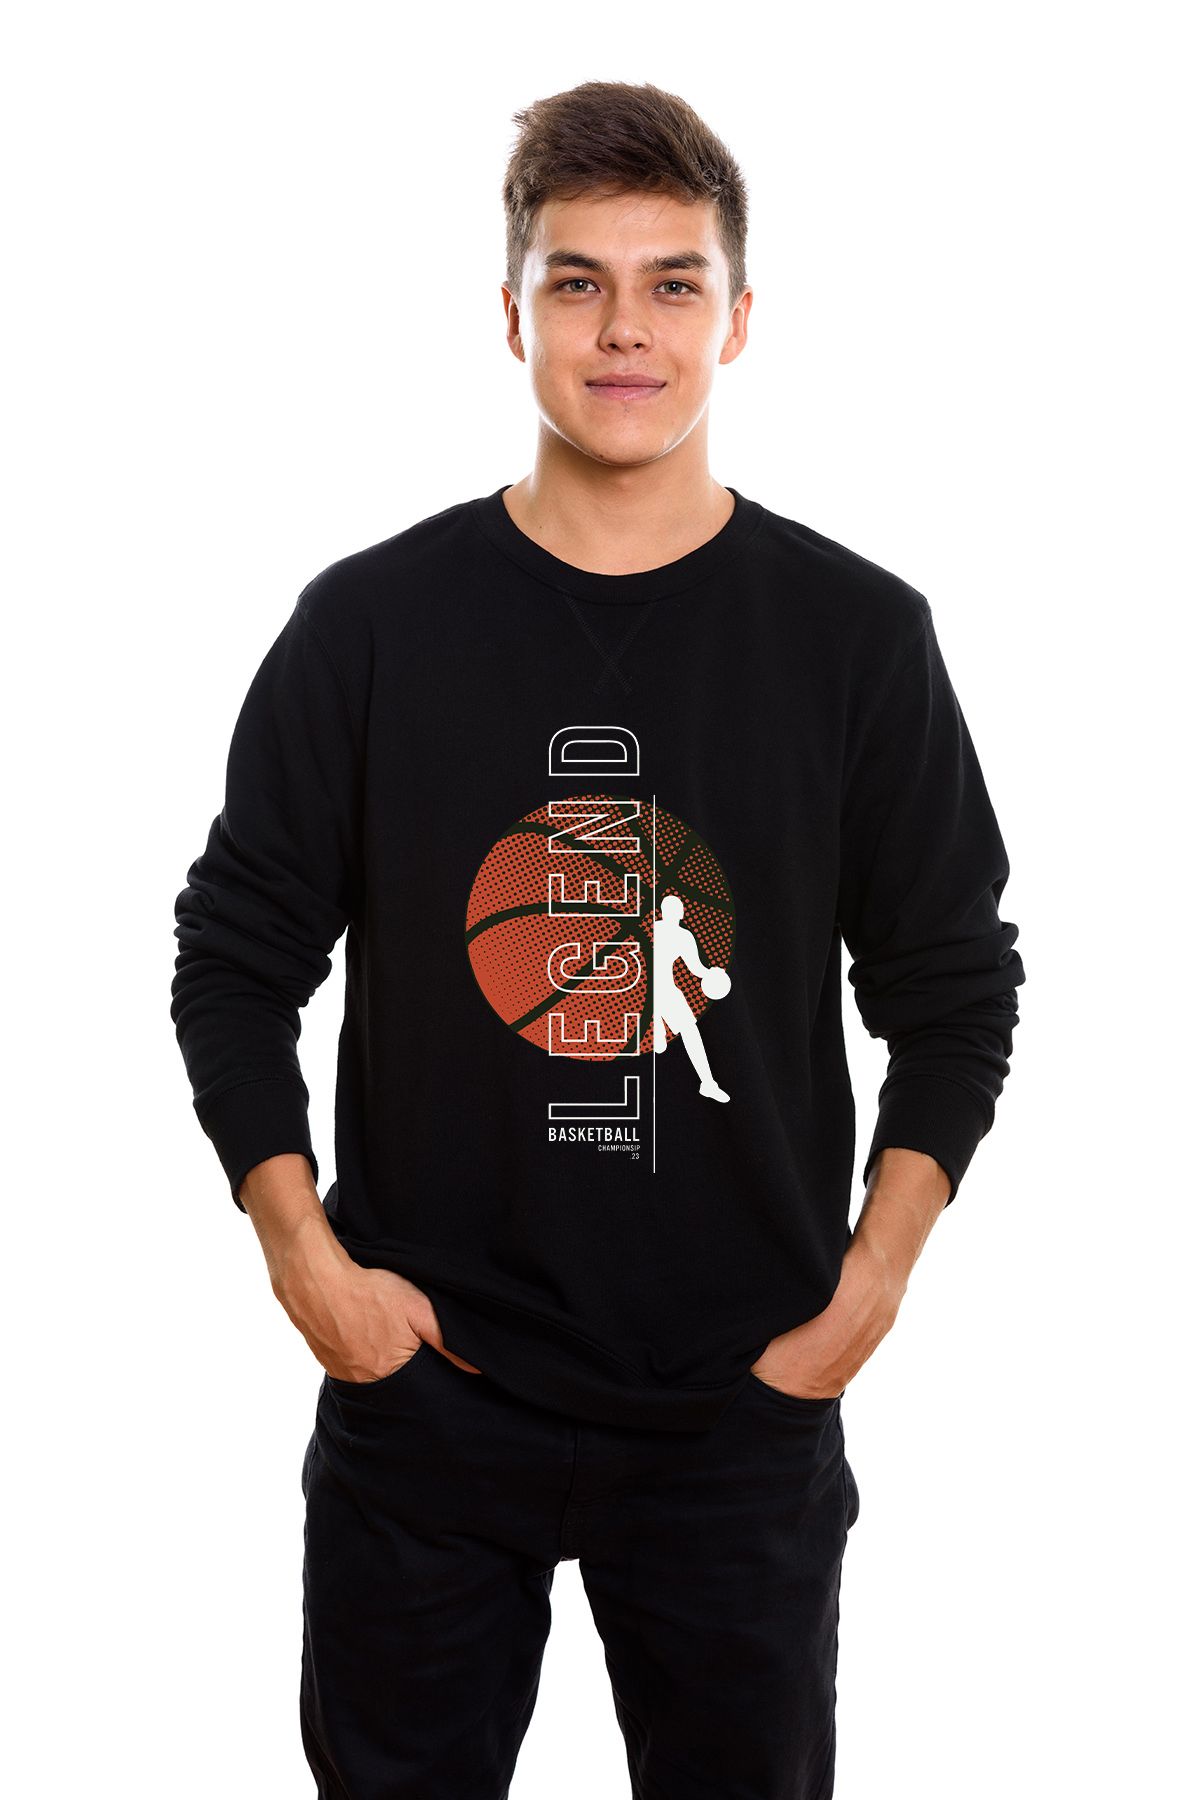 ADA BEBEK ÇOCUK Legend Basketball Tarz Erkek Sweatshirt